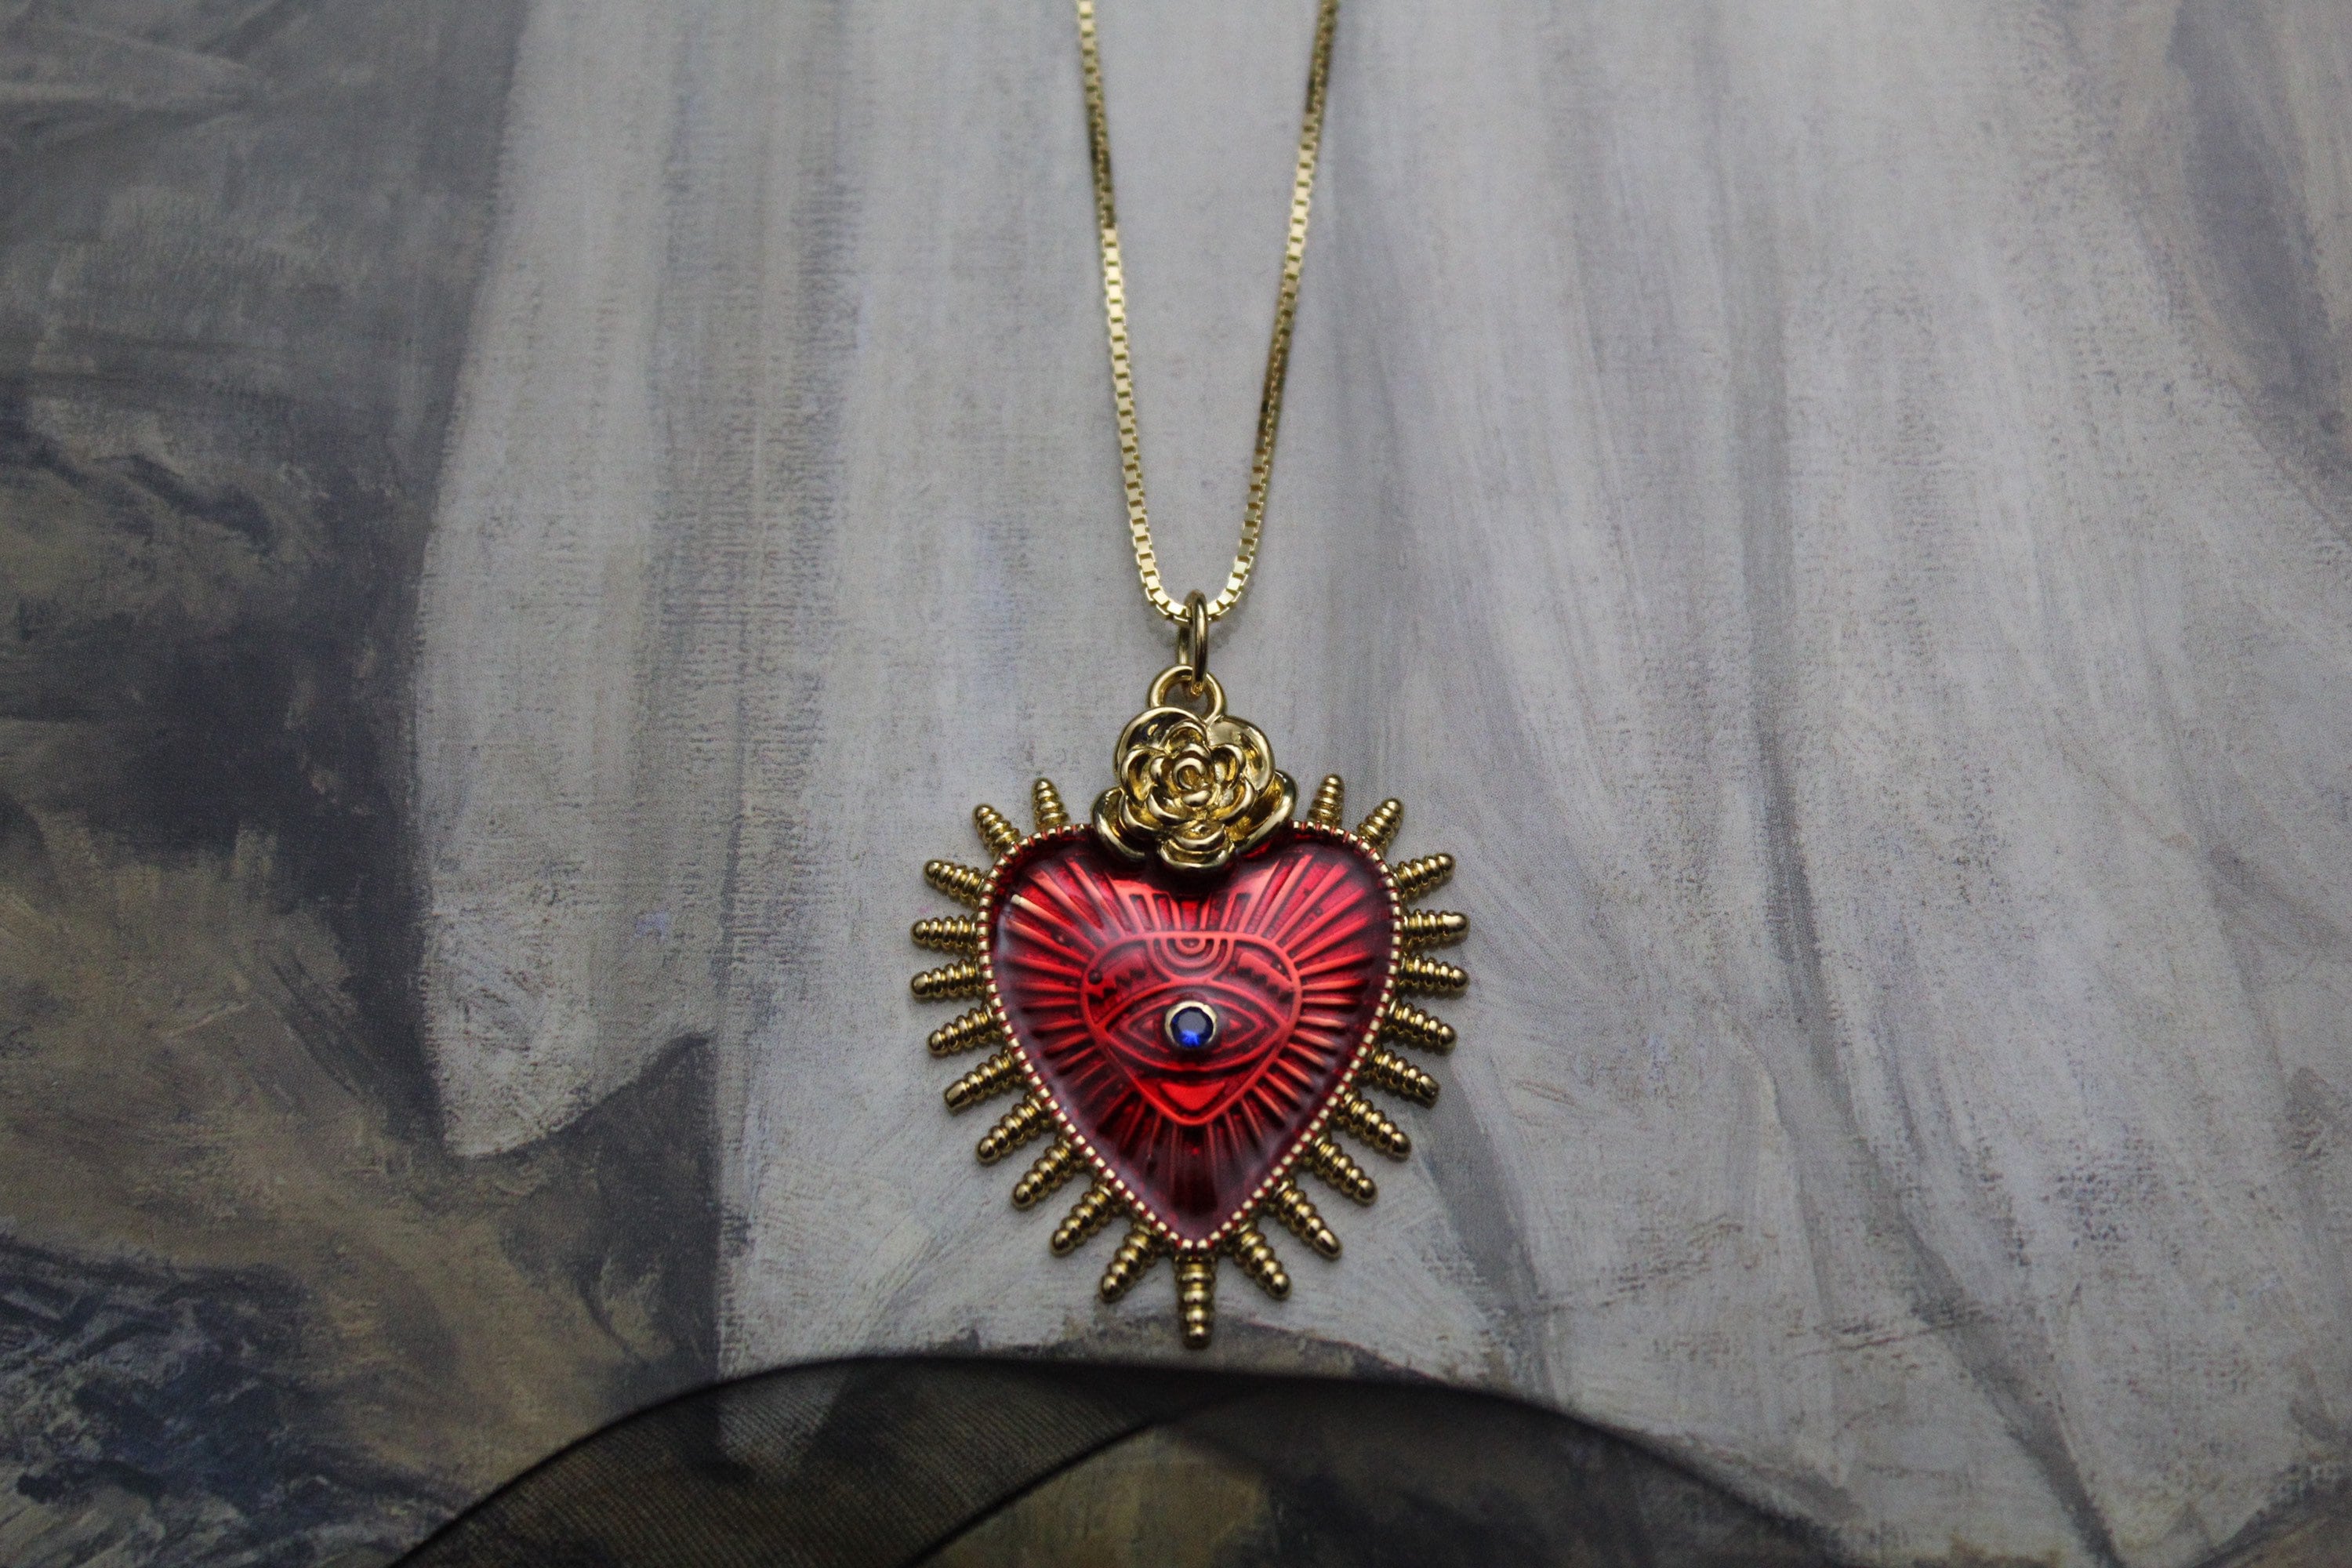 Belk & Co Heart Shape Padlock Necklace